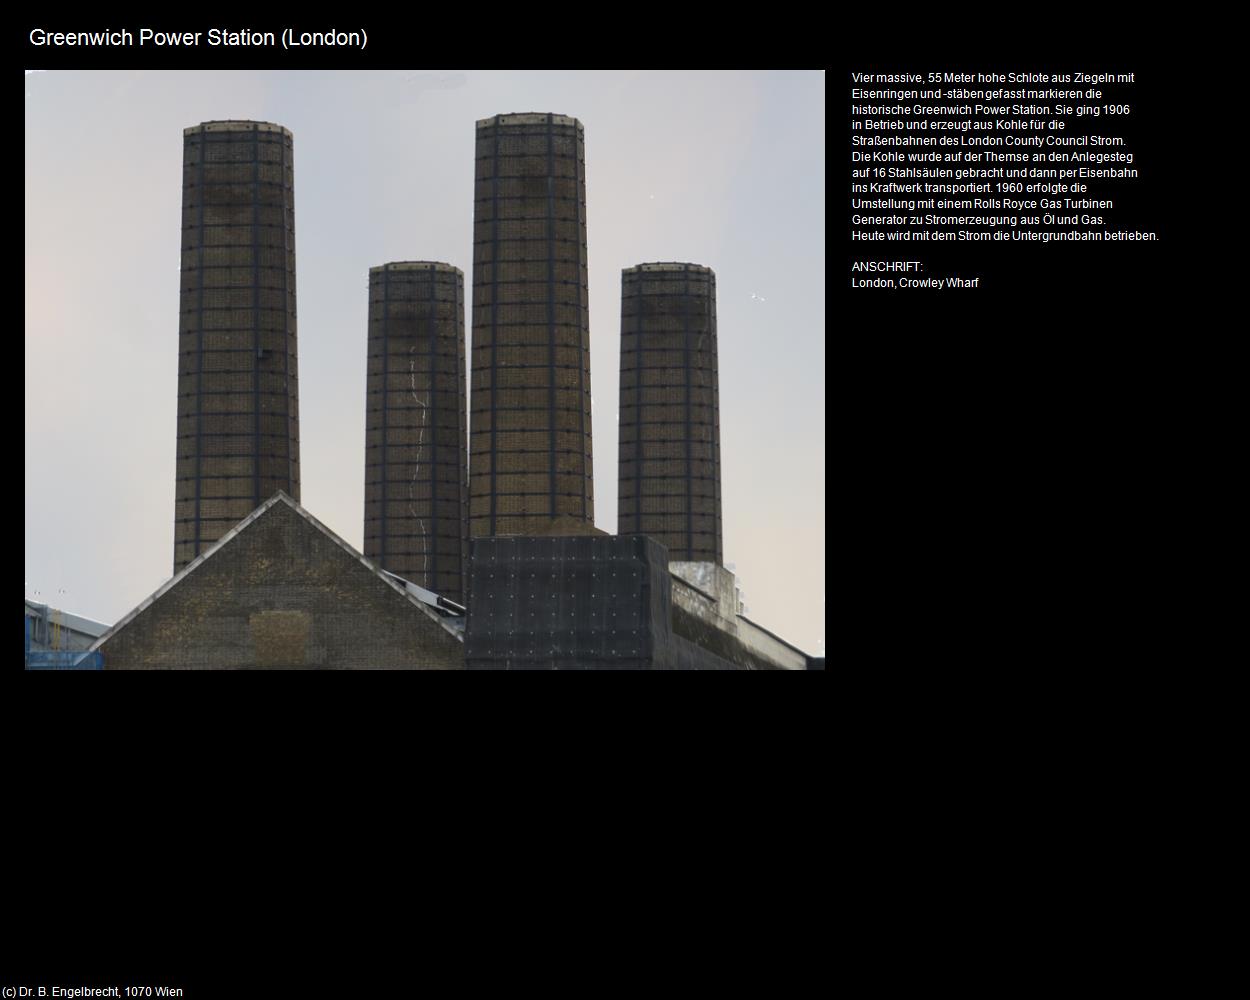 Greenwich Power Station (Greenwich)             (London, England) in Kulturatlas-ENGLAND und WALES